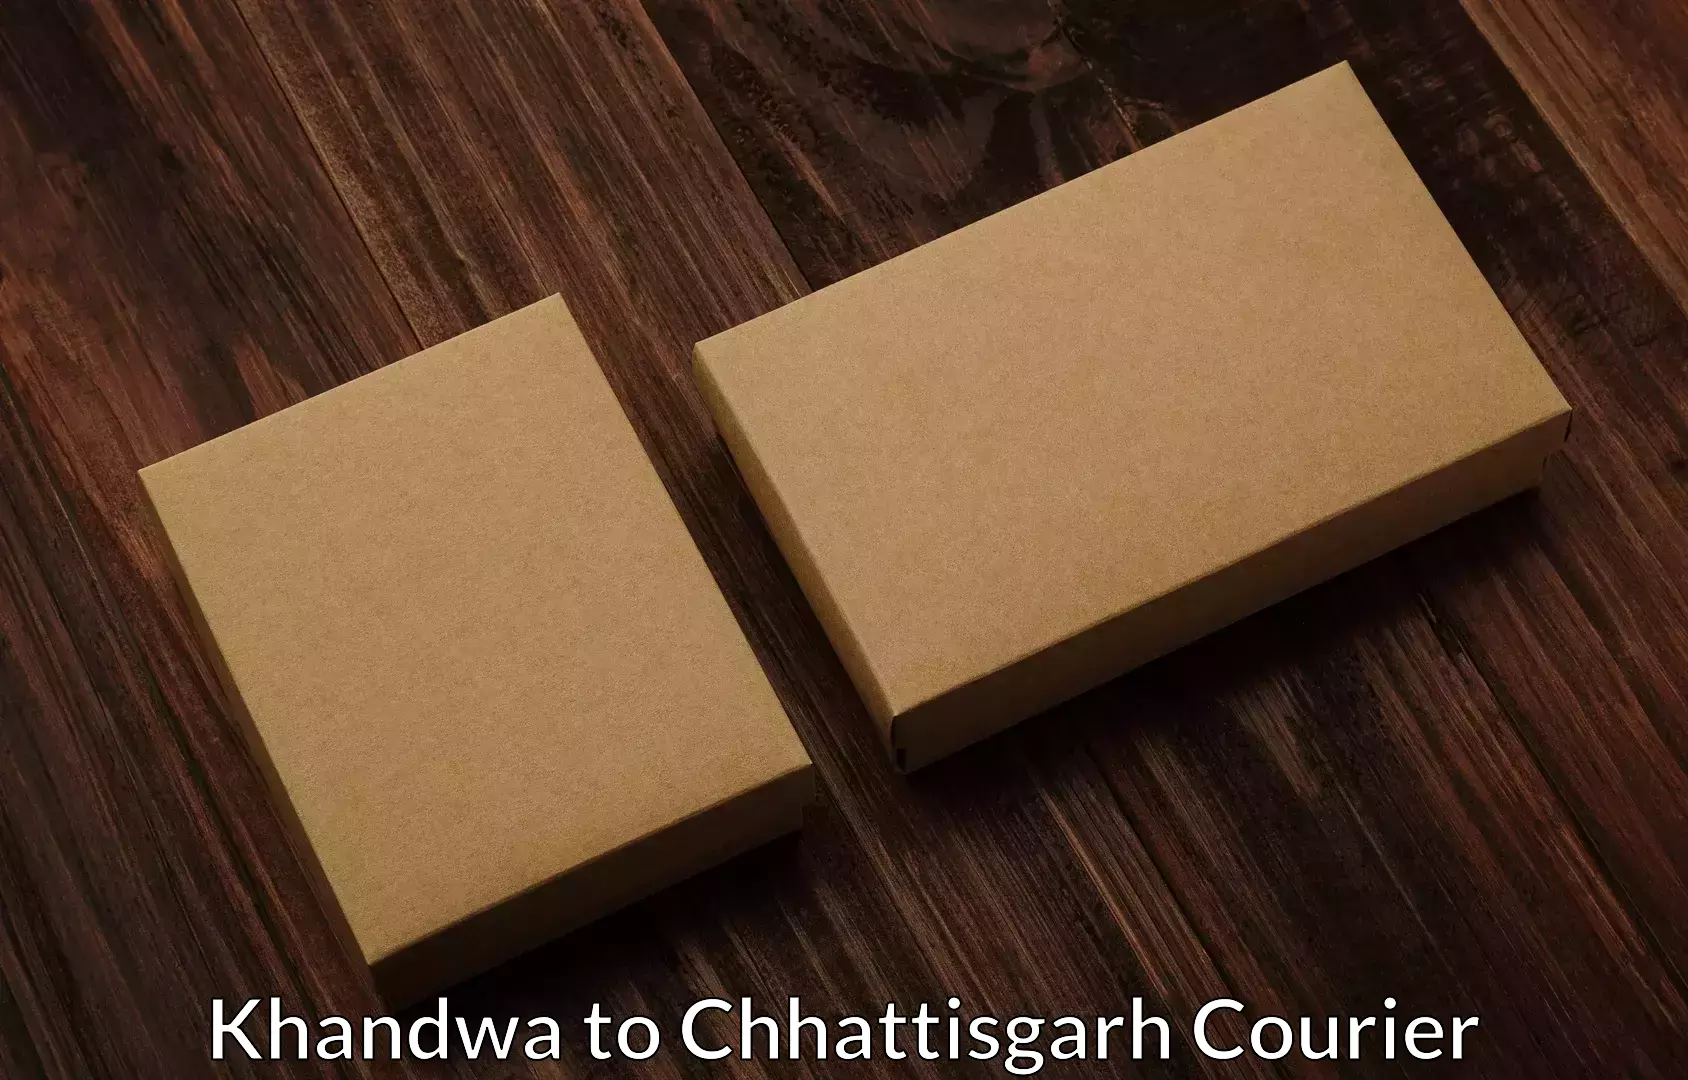 Home goods moving in Khandwa to Chhattisgarh